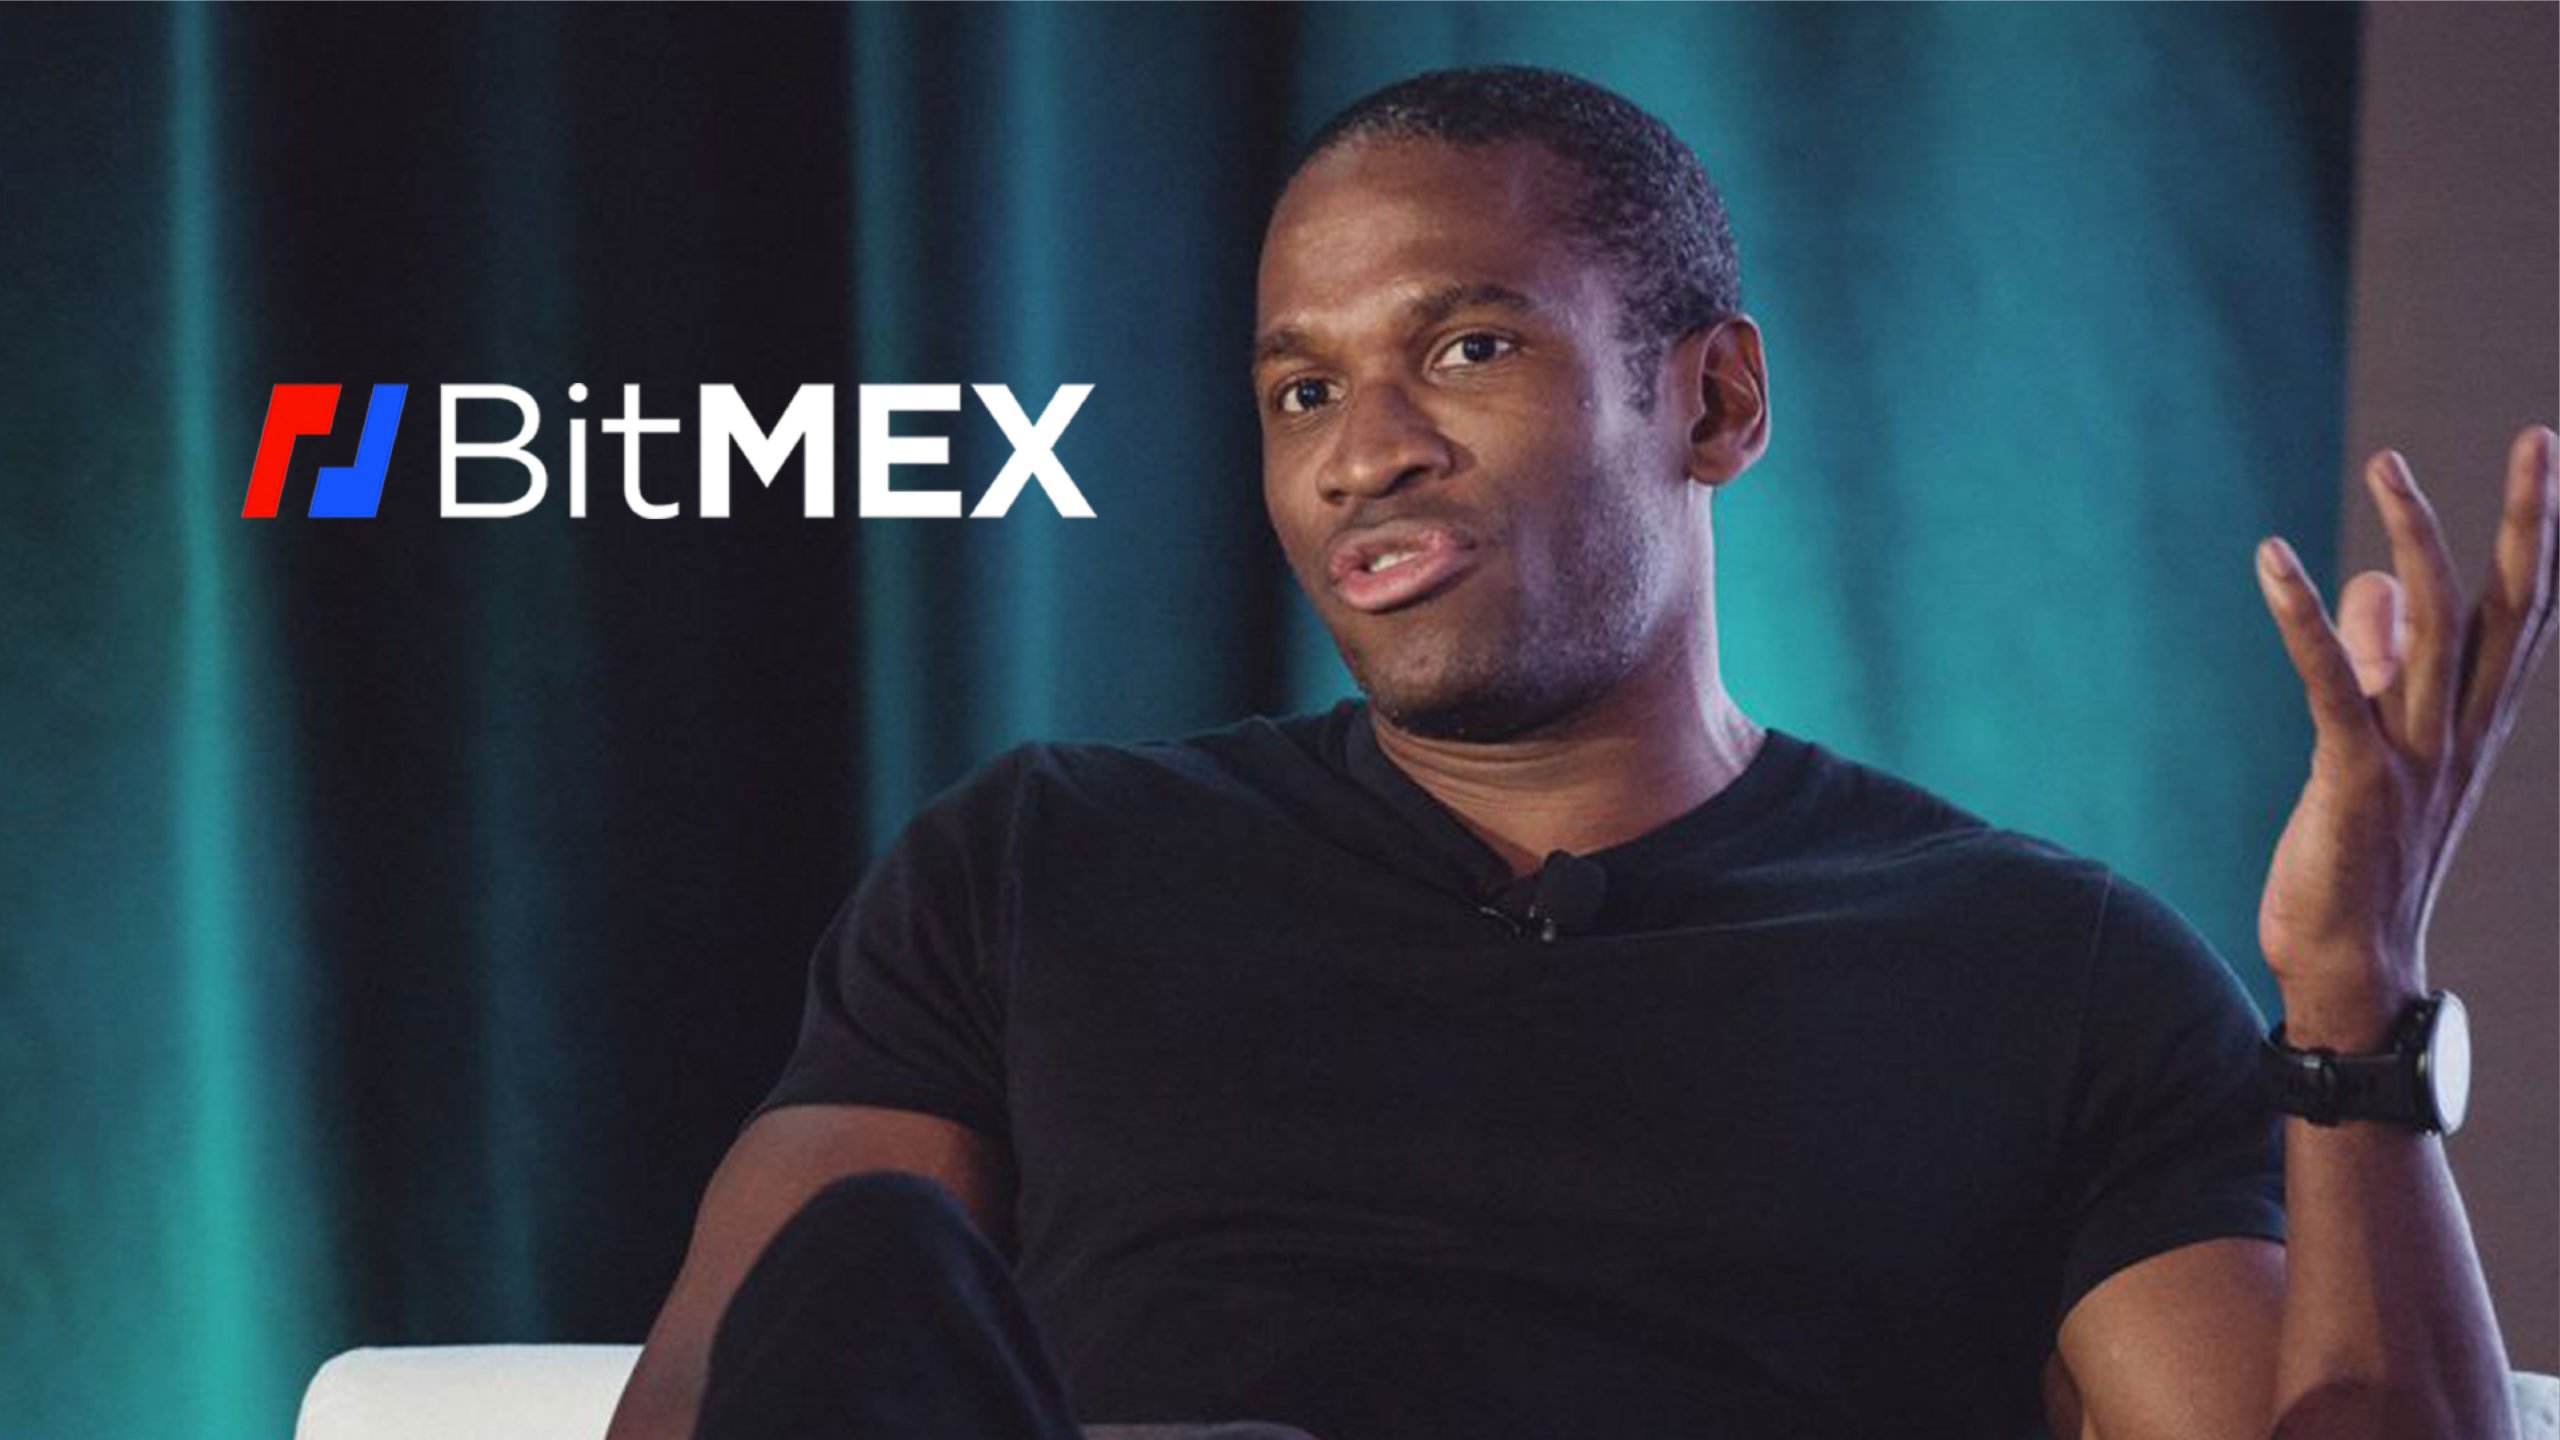 Izvršni direktor BitMEX-a Arthur Hayes govorio je o predviđanjima da će u sljedećem desetljeću doći do velike financijske krize